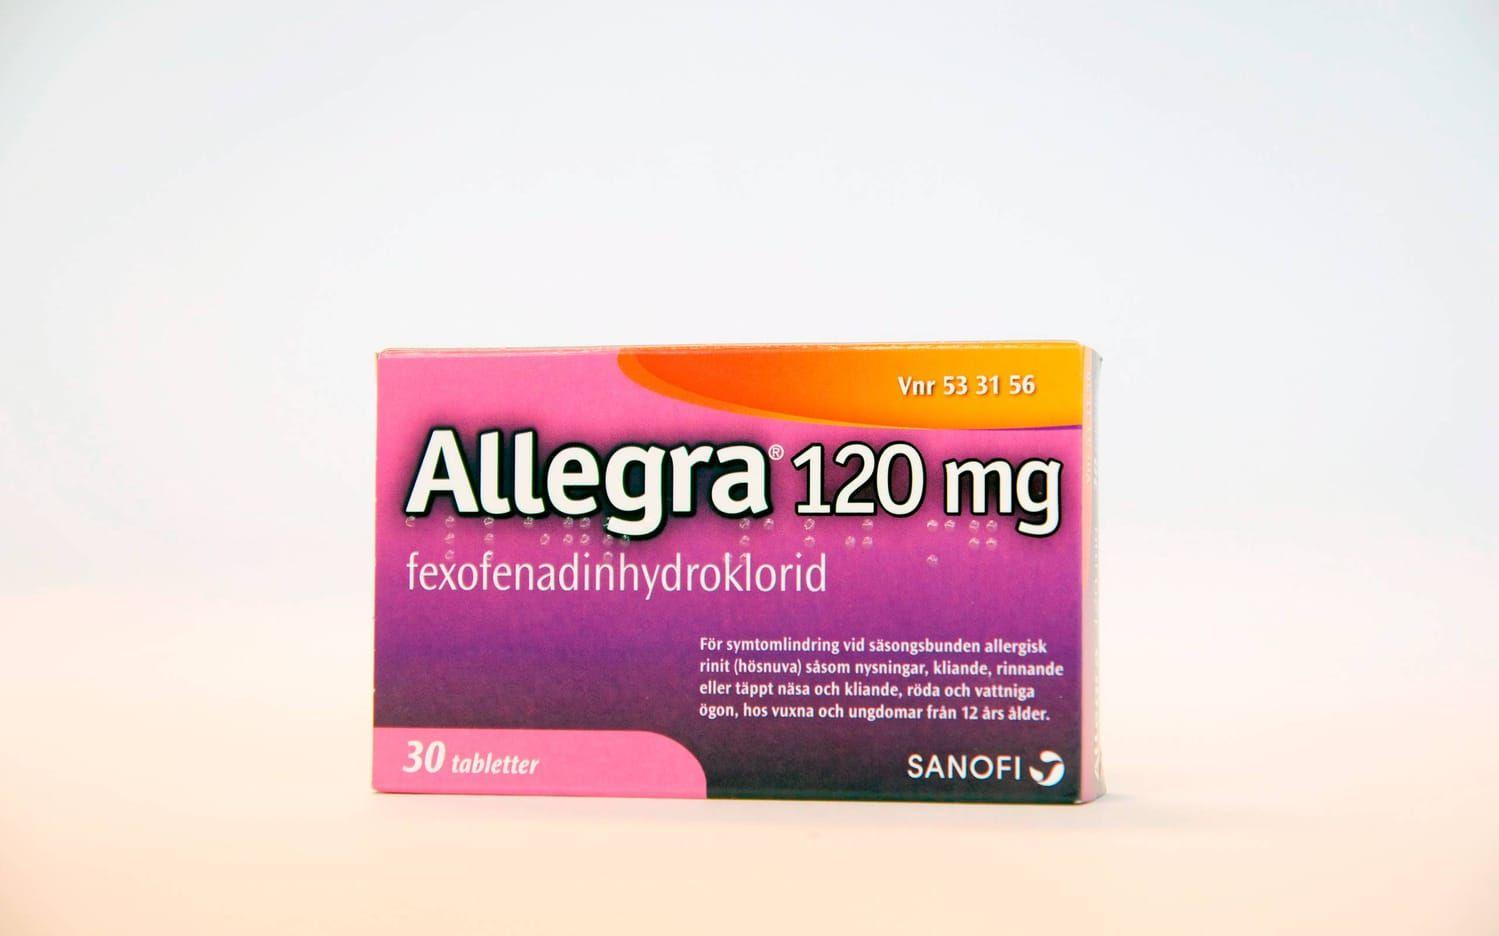 Kostar 5,57 kr/tablett. Aktiv substans fexofenadinhydroklorid.